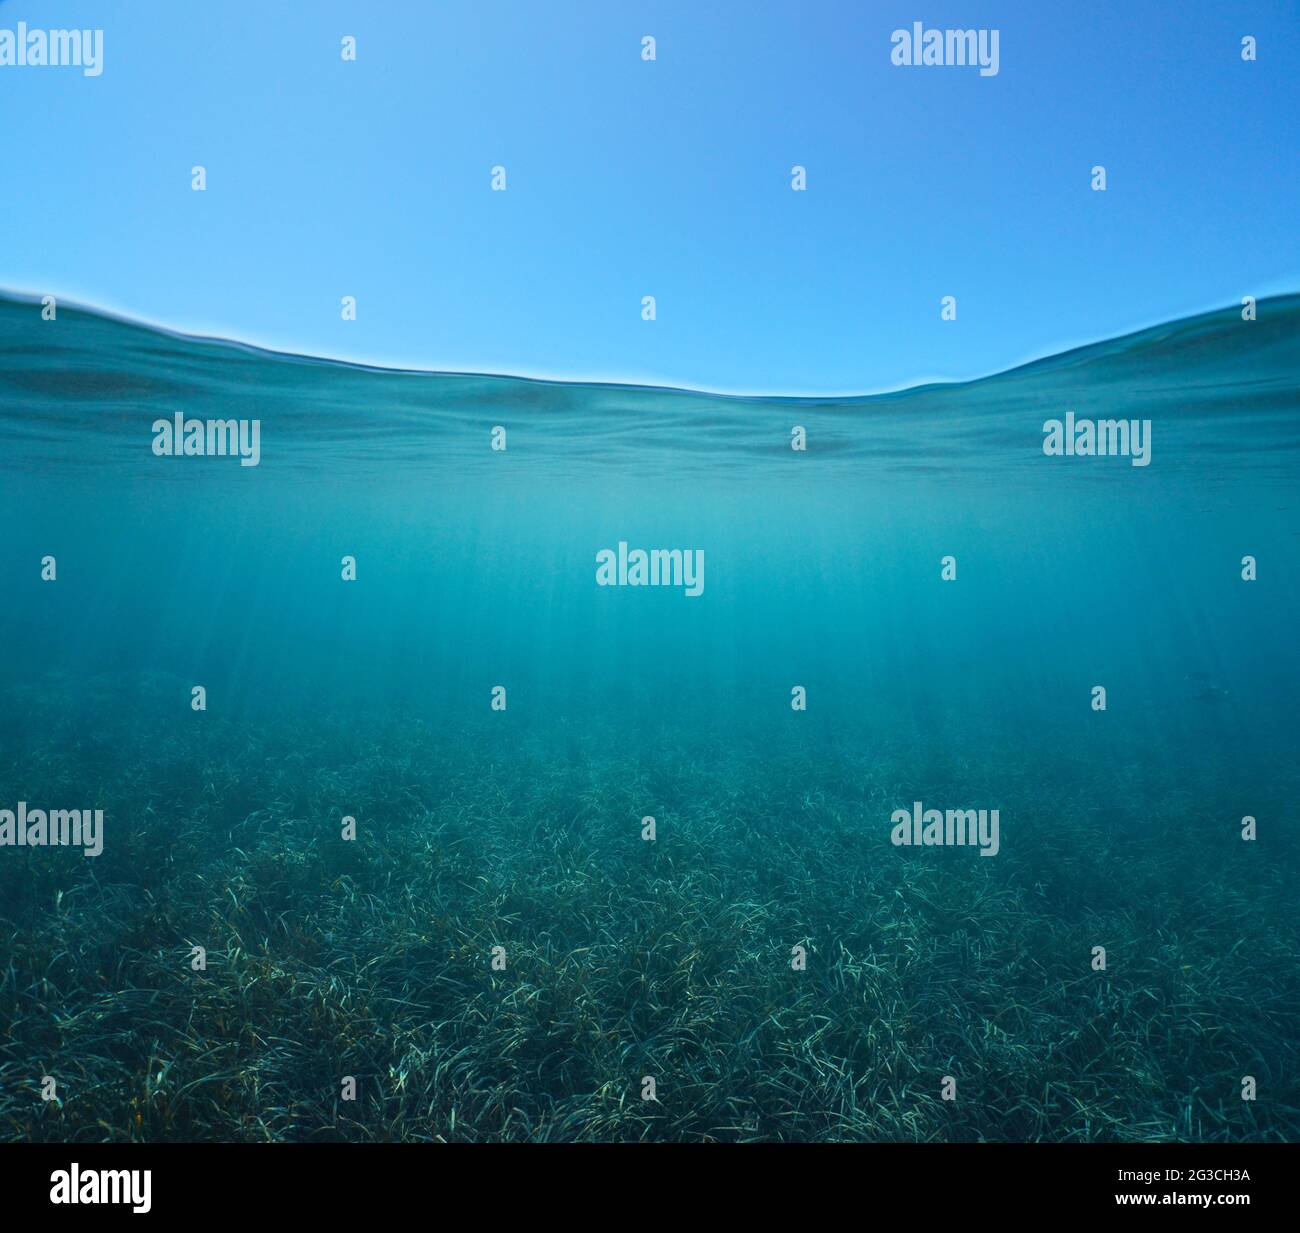 Ciel bleu avec herbe sous l'eau, vue partagée sur et sous la surface de l'eau, mer Méditerranée Banque D'Images